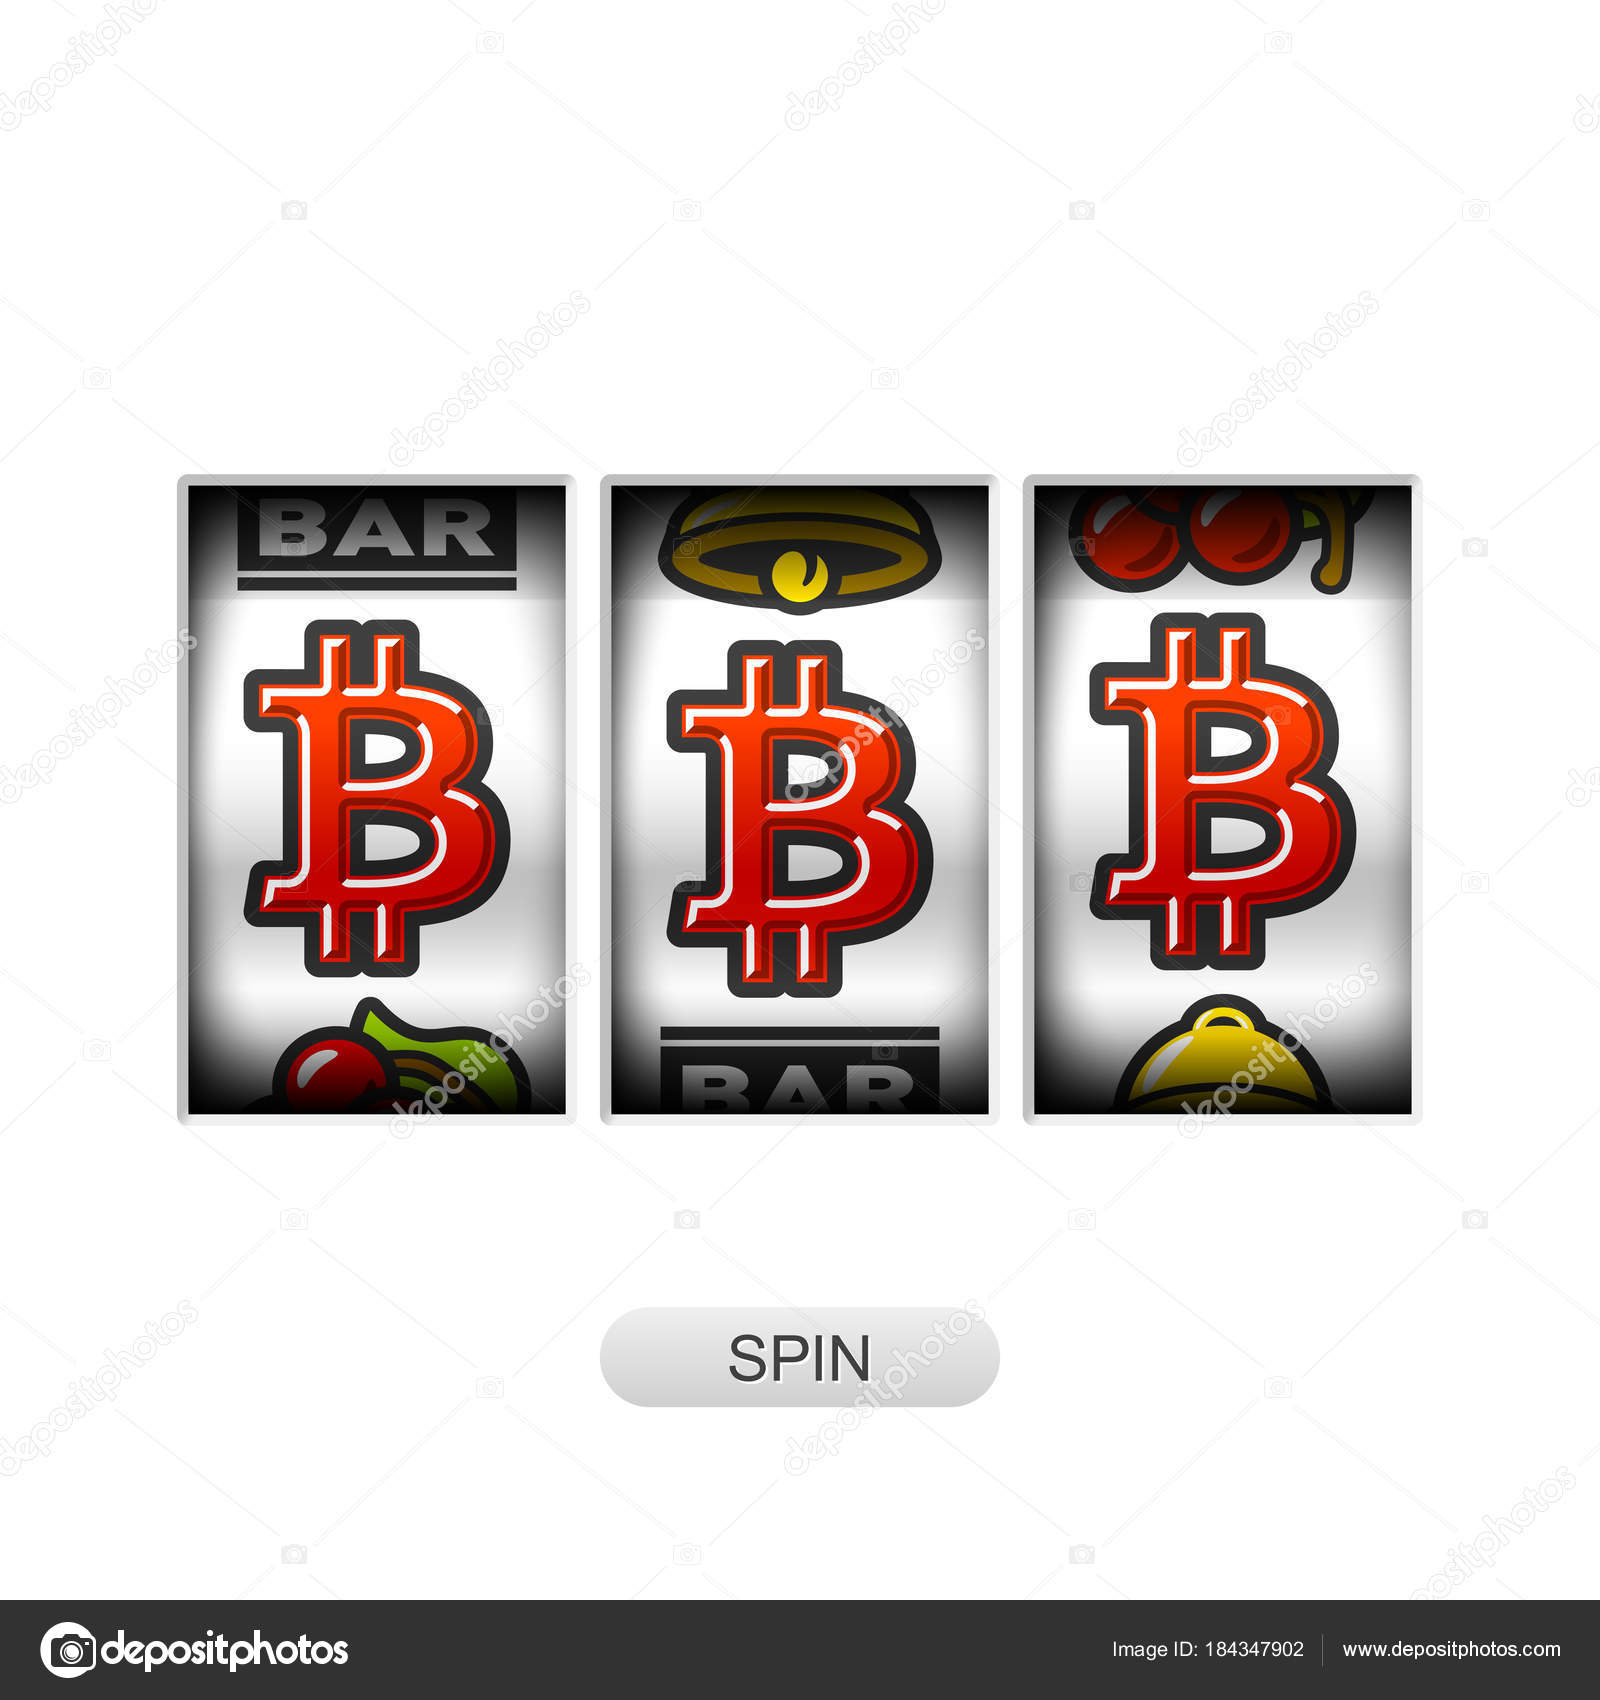 bitcoin jackpot)